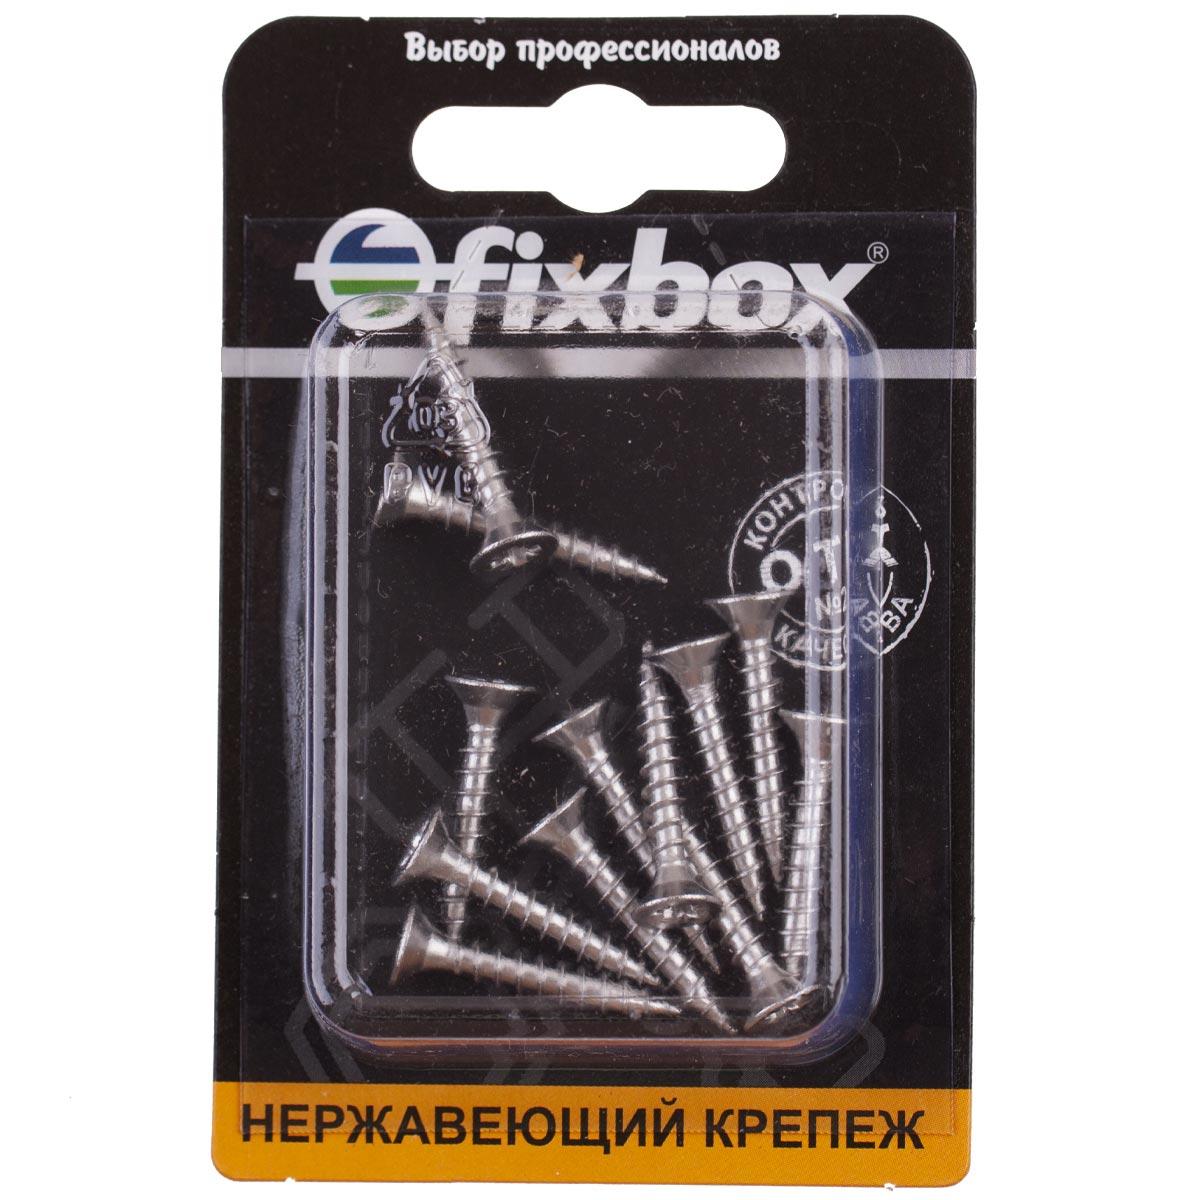 Саморезы Fixbox универсальные, нержавеющие, 4,0х25 мм, 566130, 12 шт. саморезы fixbox универсальные нержавеющие 3 5х16 мм 566050 12 шт